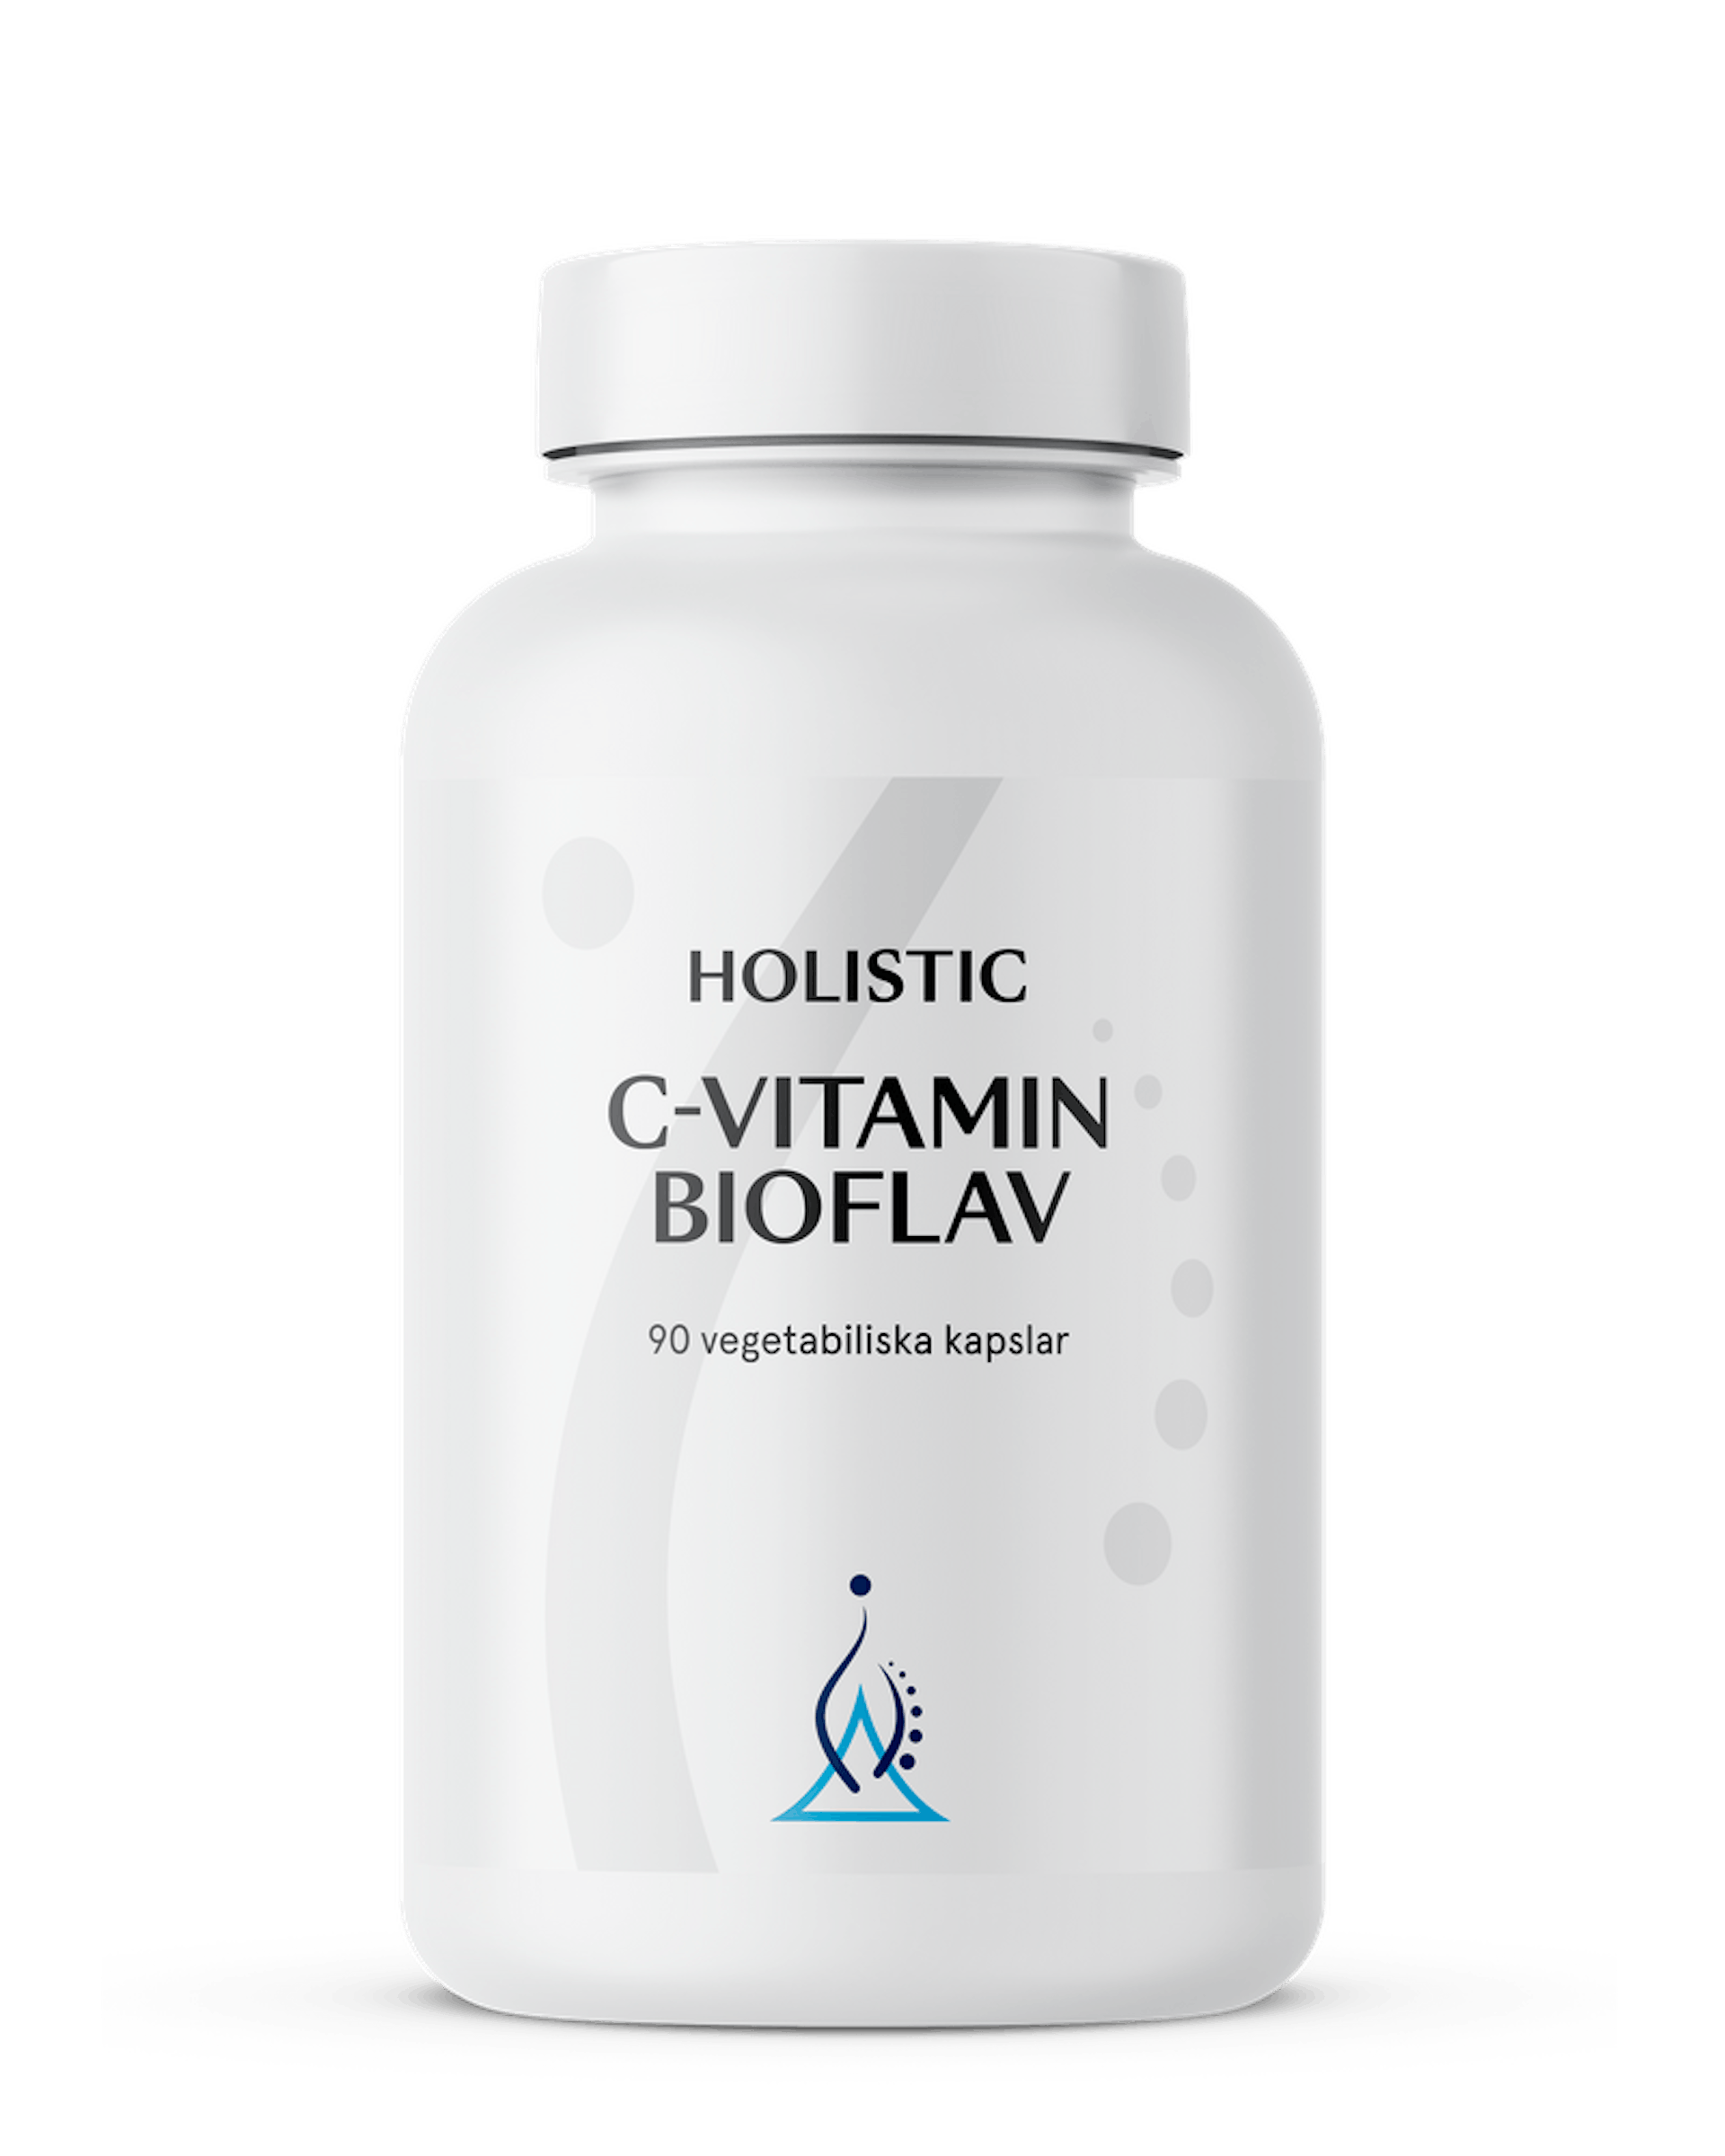 C-vitamin bioflav, 90 kapslar (1 av 1)